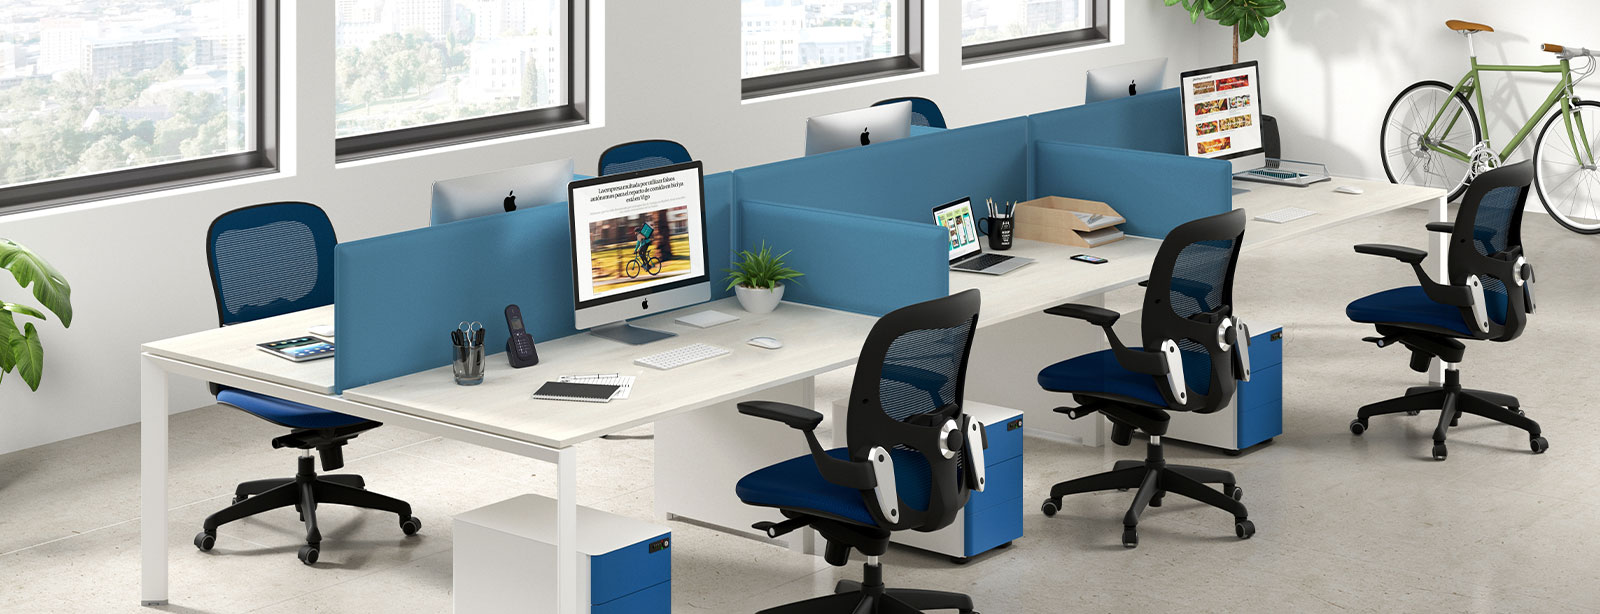 Cuánto espacio debe haber en la oficina por persona? - Blog